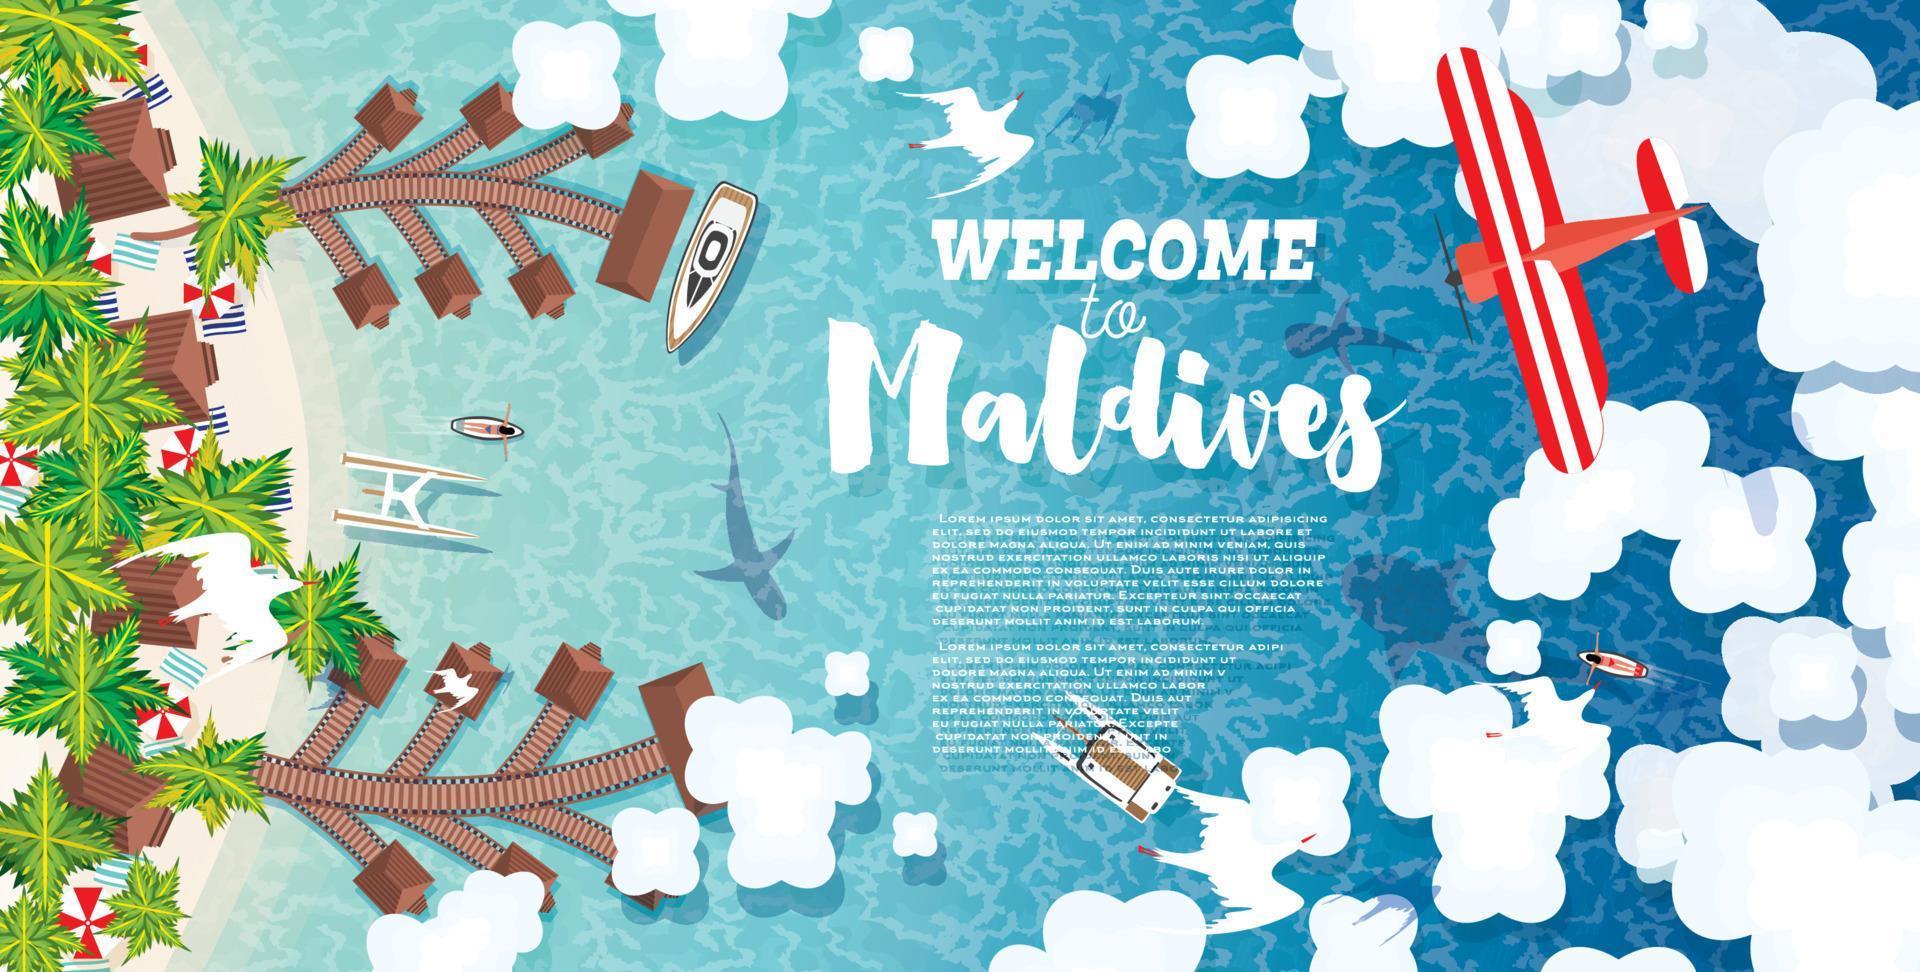 Malediven-Strand auf der Insel. Sommerhintergrund mit tropischem Strand, Palmen, Hotel, Wolken und Flugzeug. vektor